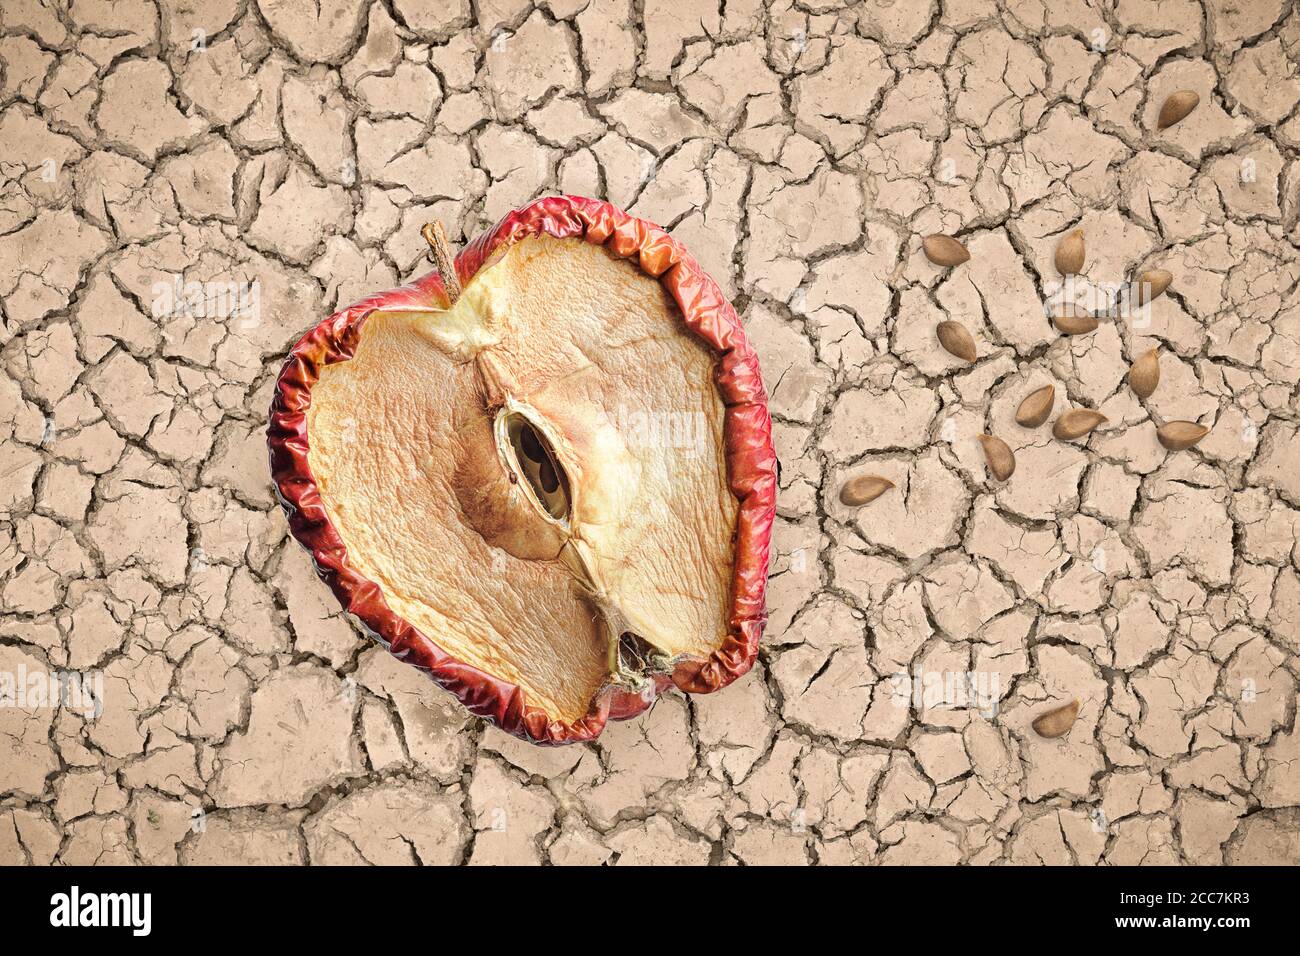 Pomme à moitié pourrie et graines sur sol sec et fissuré, concept sans espoir sans avenir. Banque D'Images